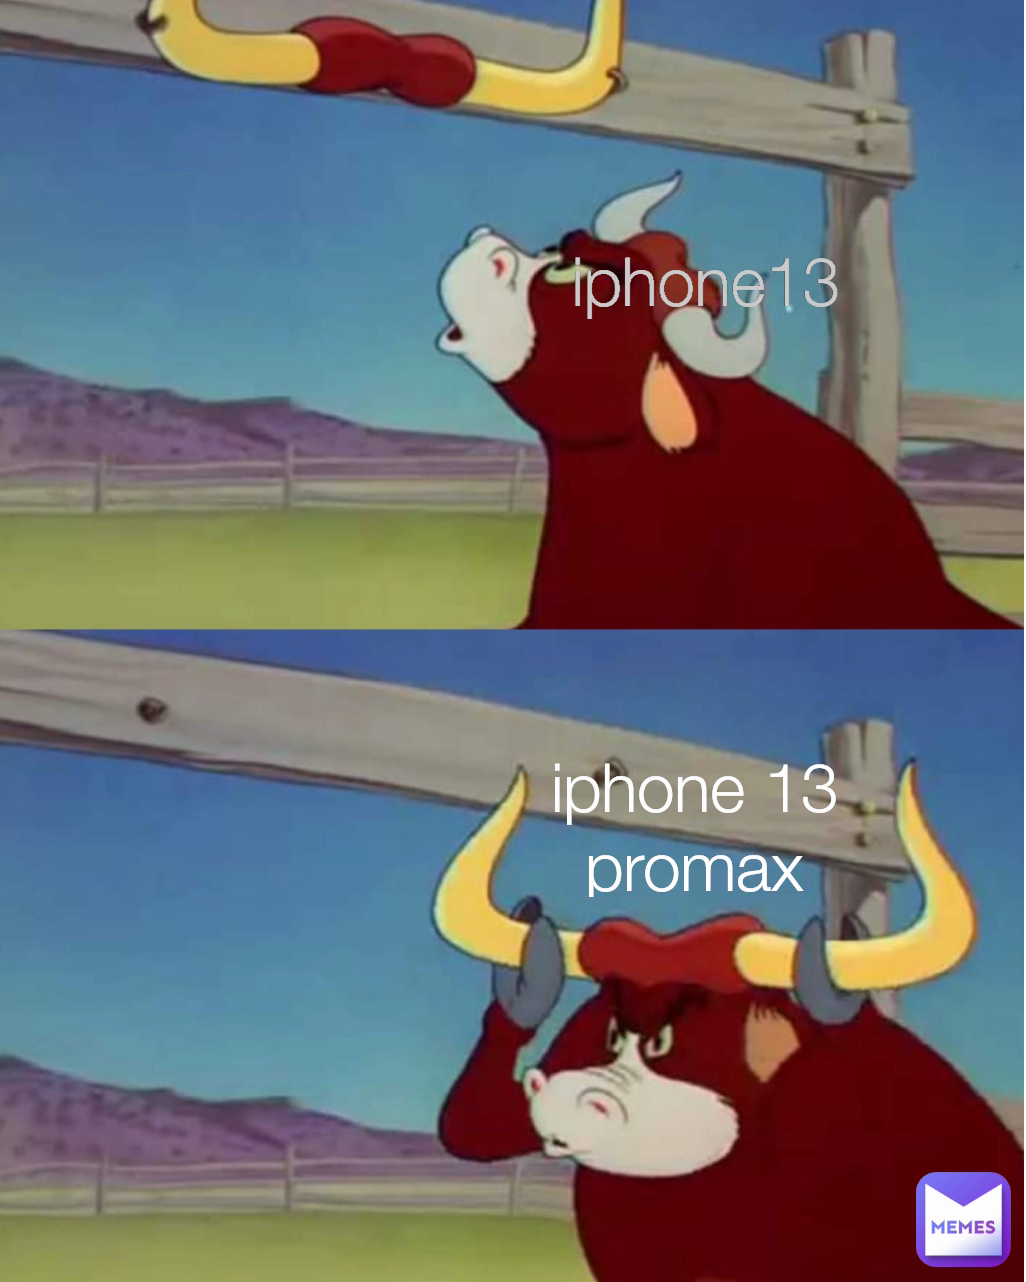 iphone 13 promax iphone13